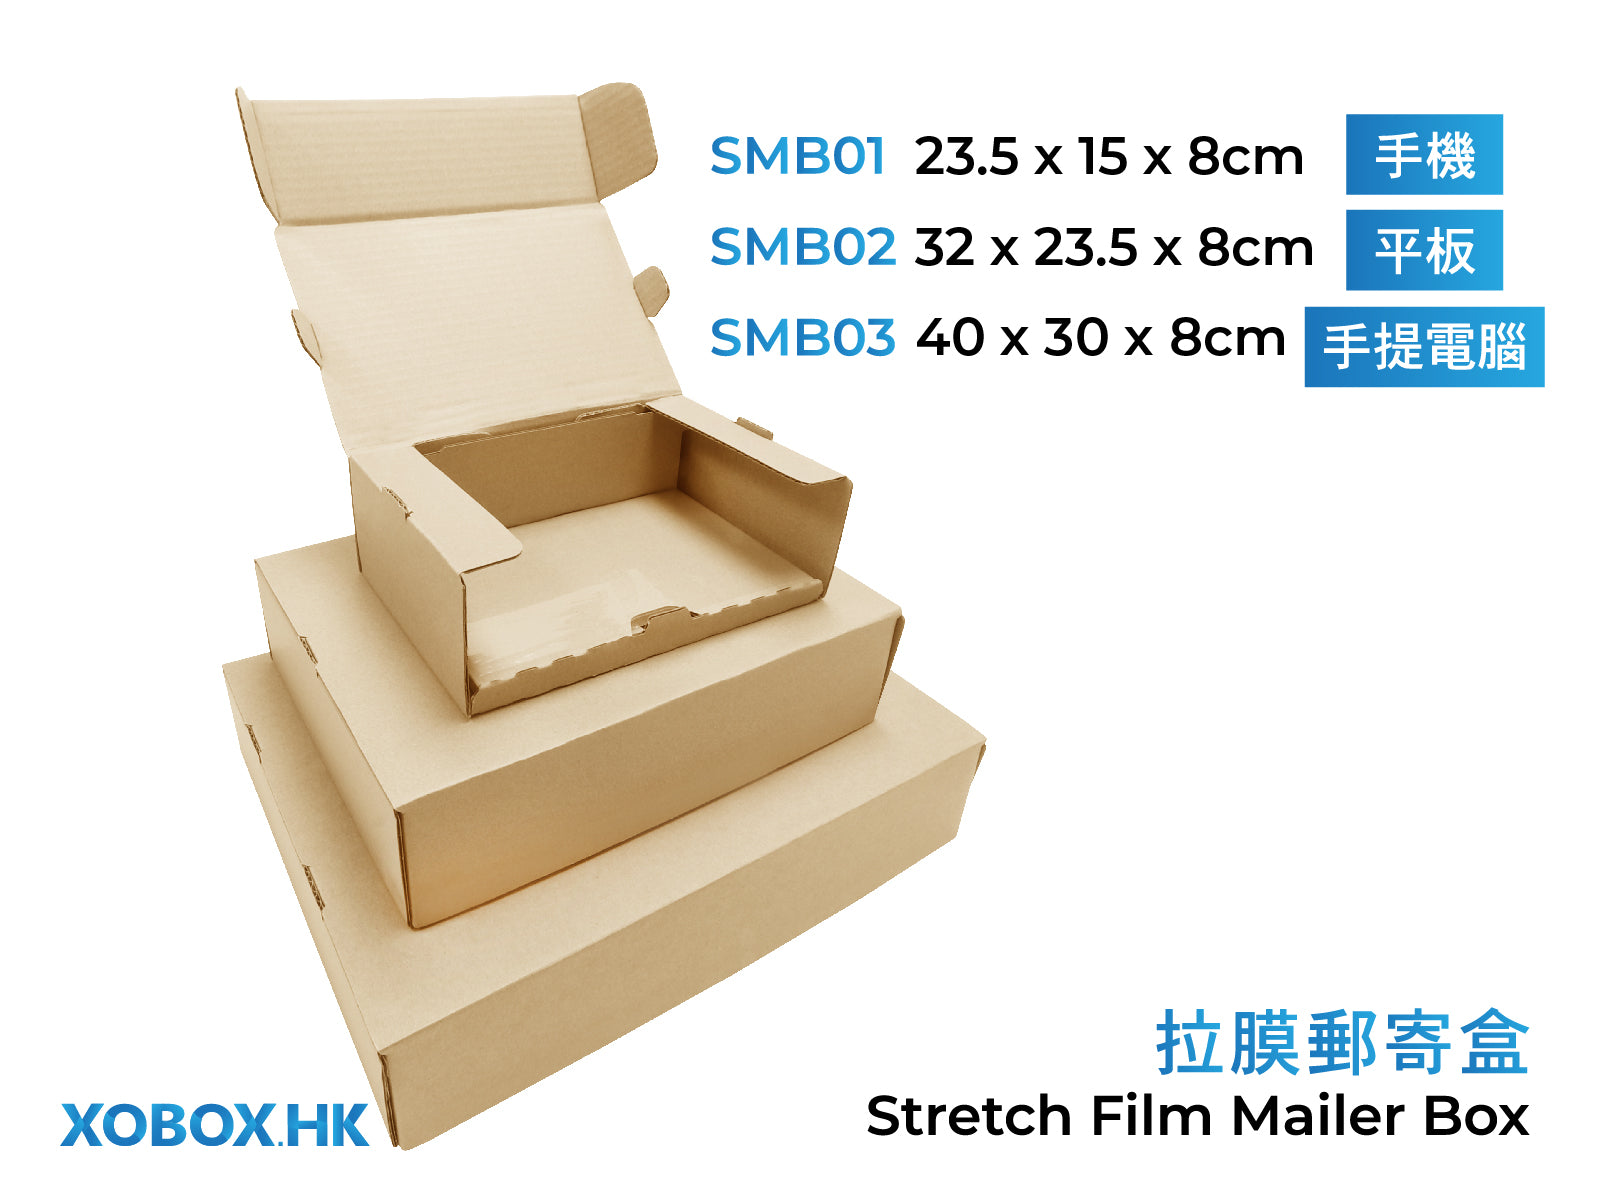 Stretch Film Mailer Box 拉膜郵寄盒